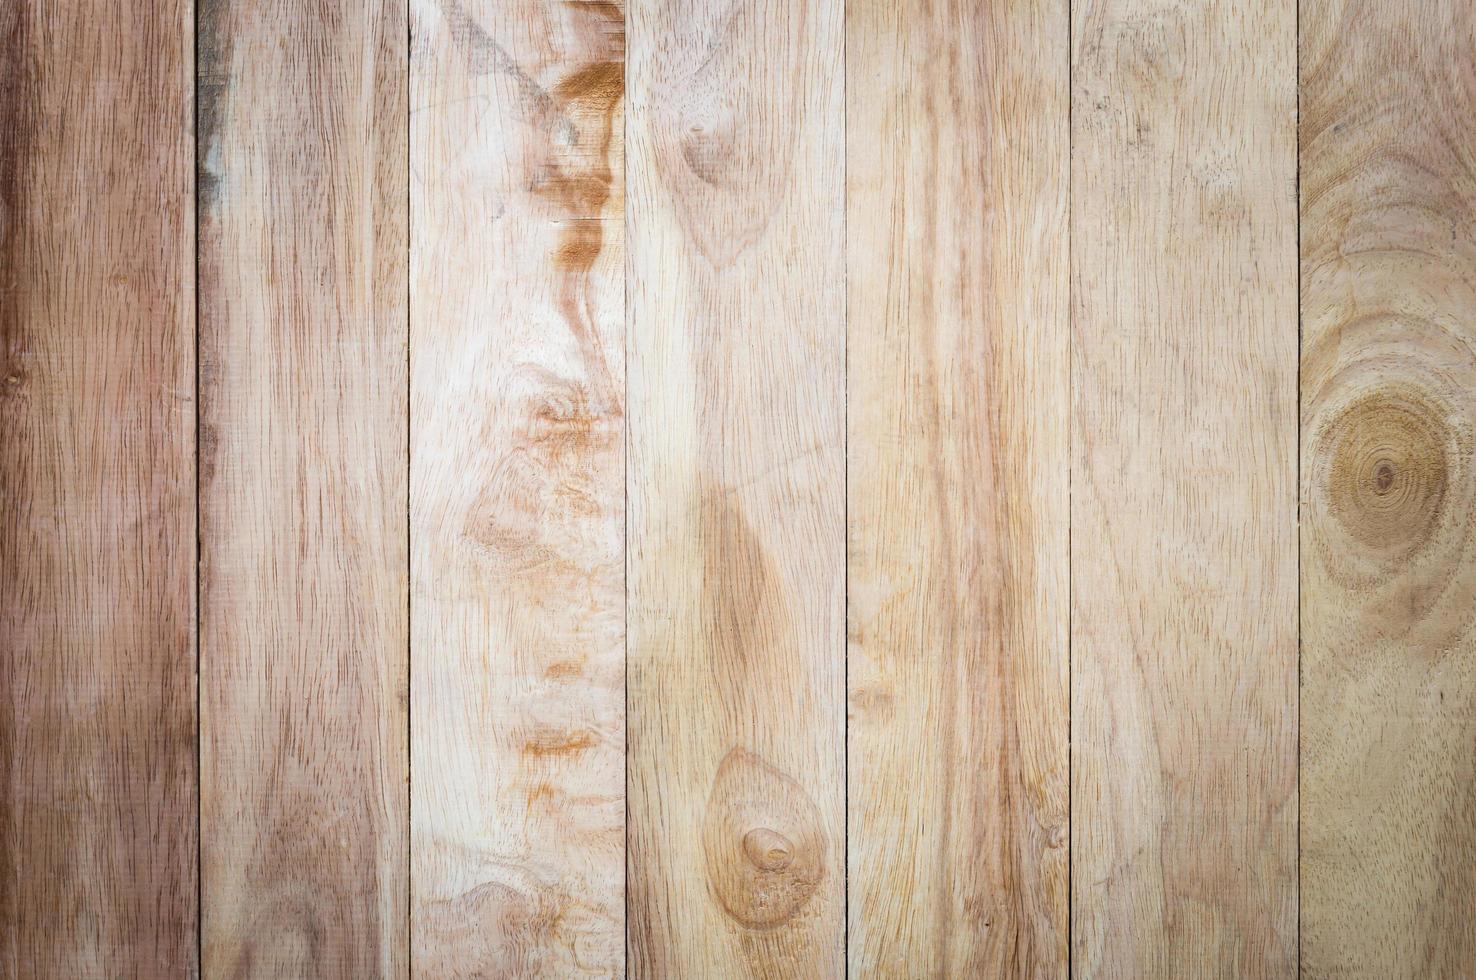 tavolo in legno con superfici antiche vintage per sfondo retrò, parete in legno vecchio di sfondo e pavimento in legno con concetto naturale vintage foto